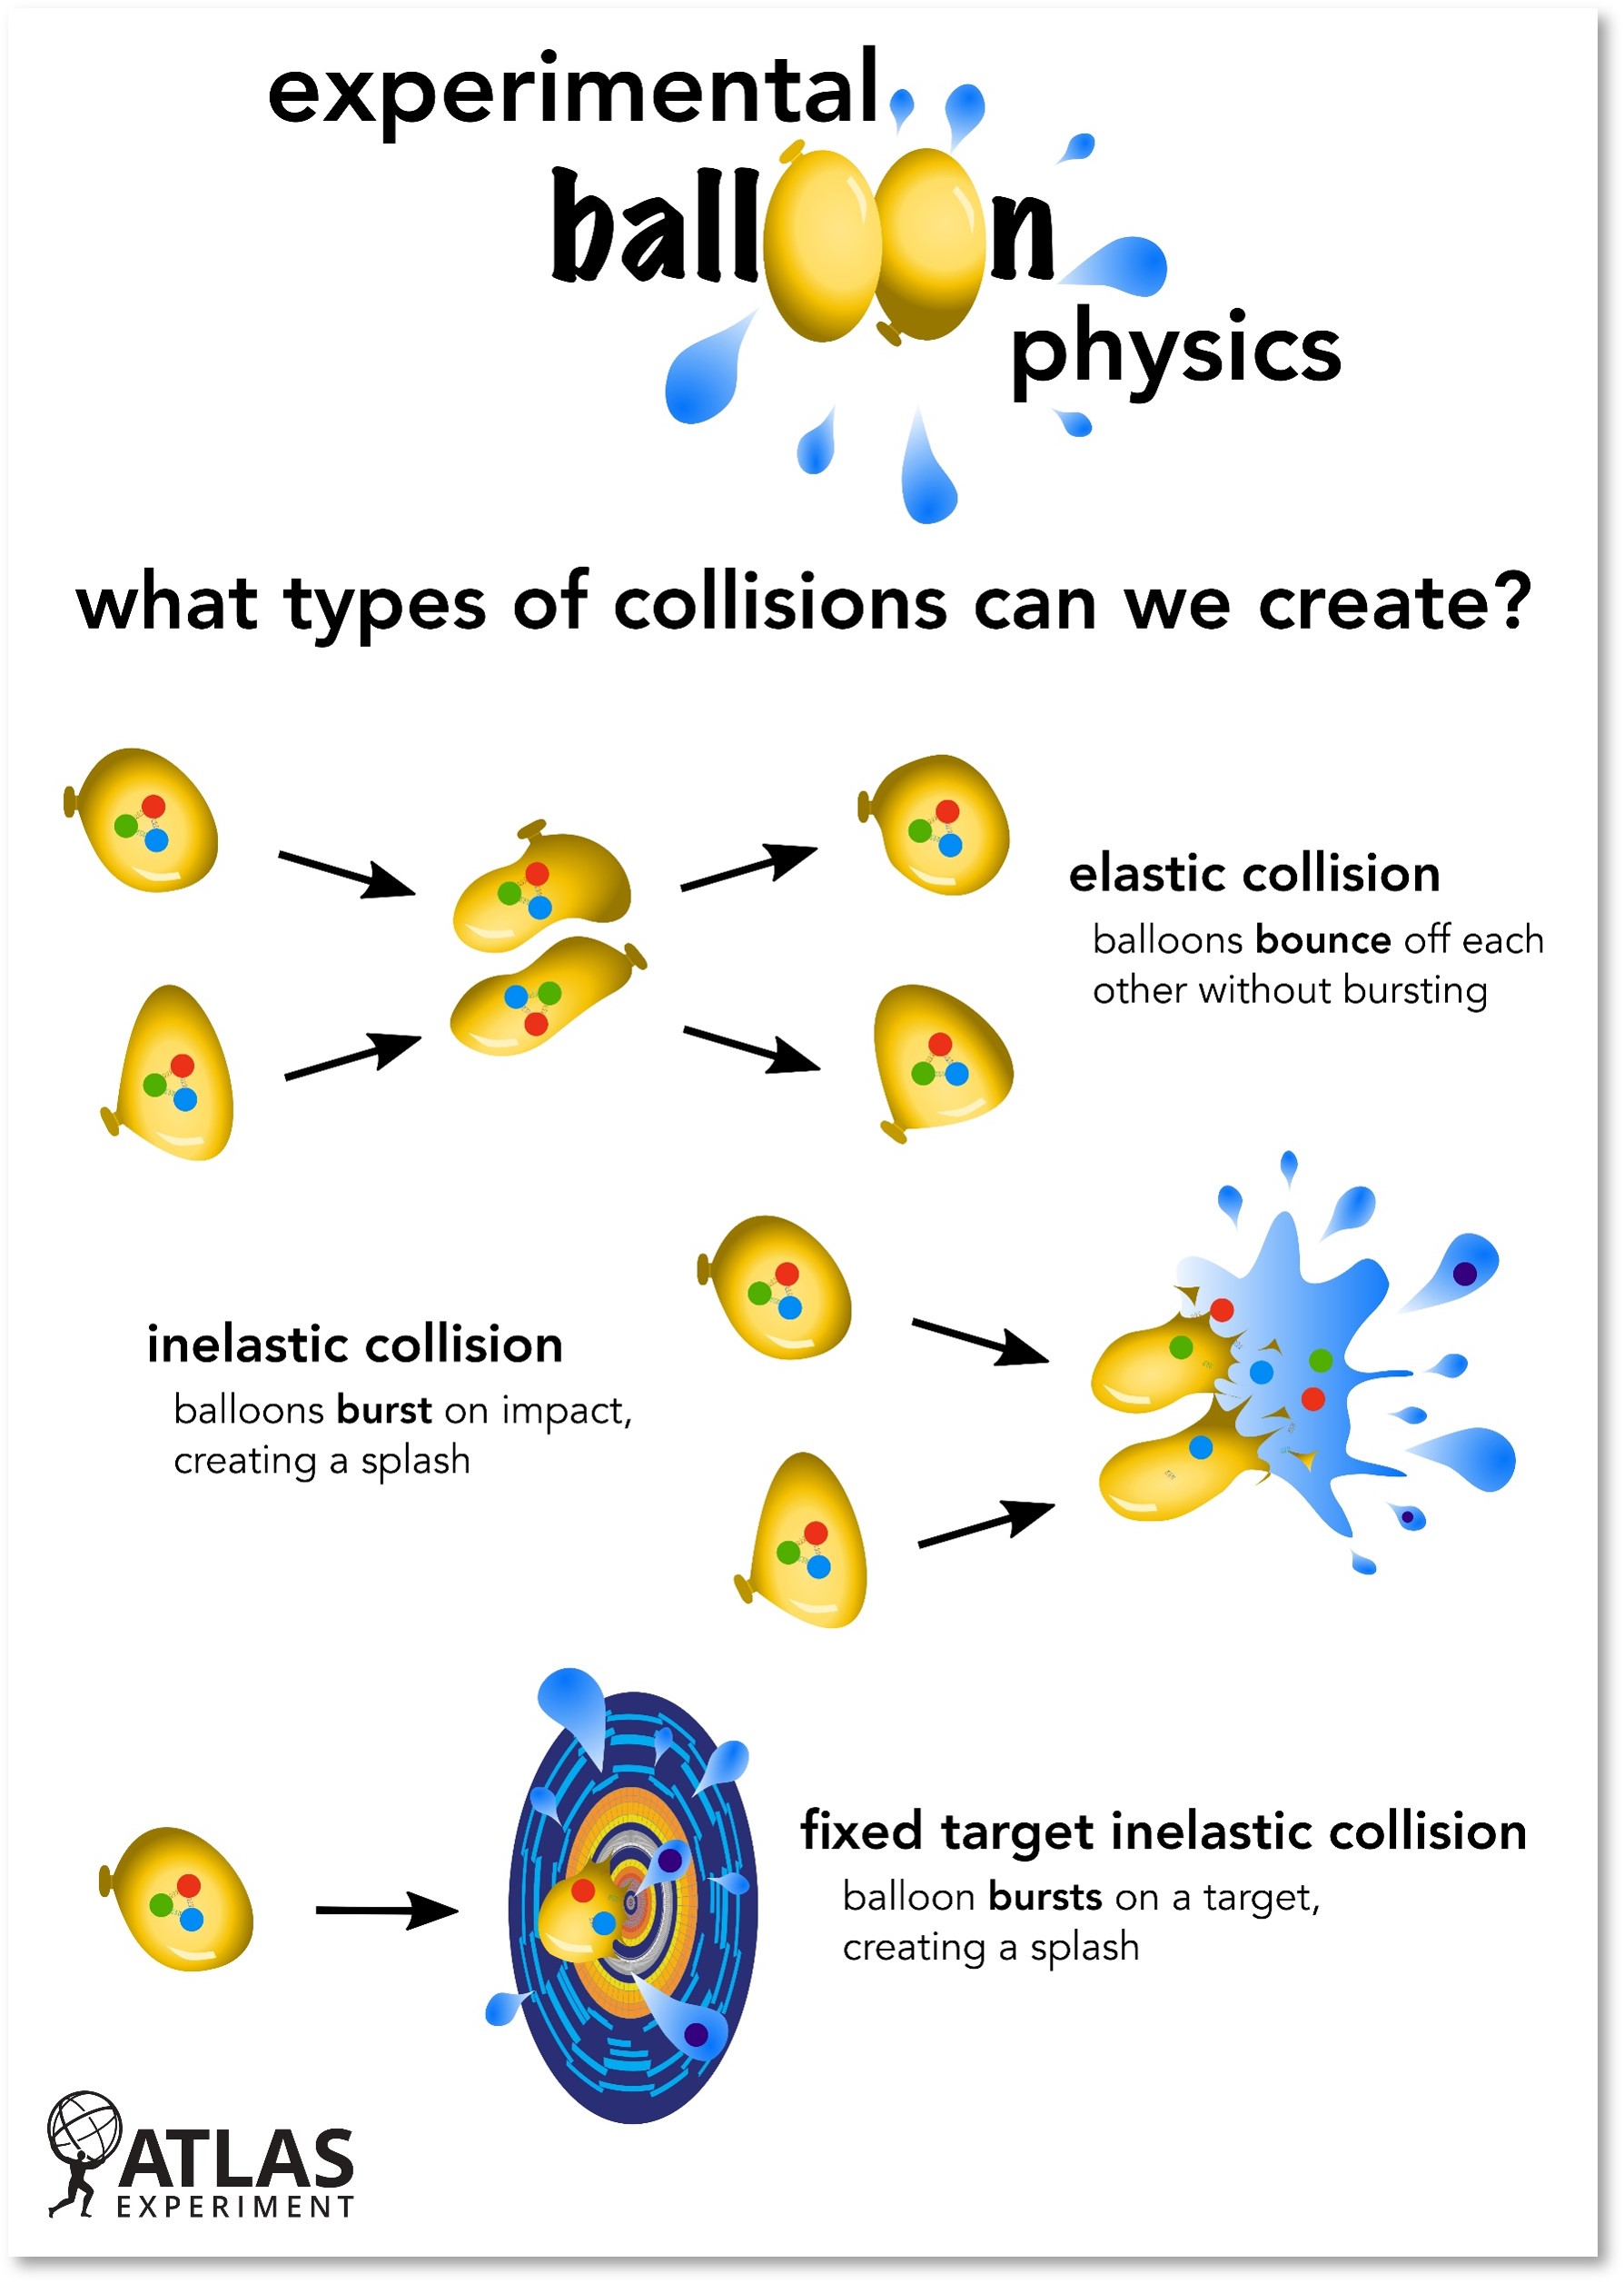 Making a Splash - Experimental Balloon Physics